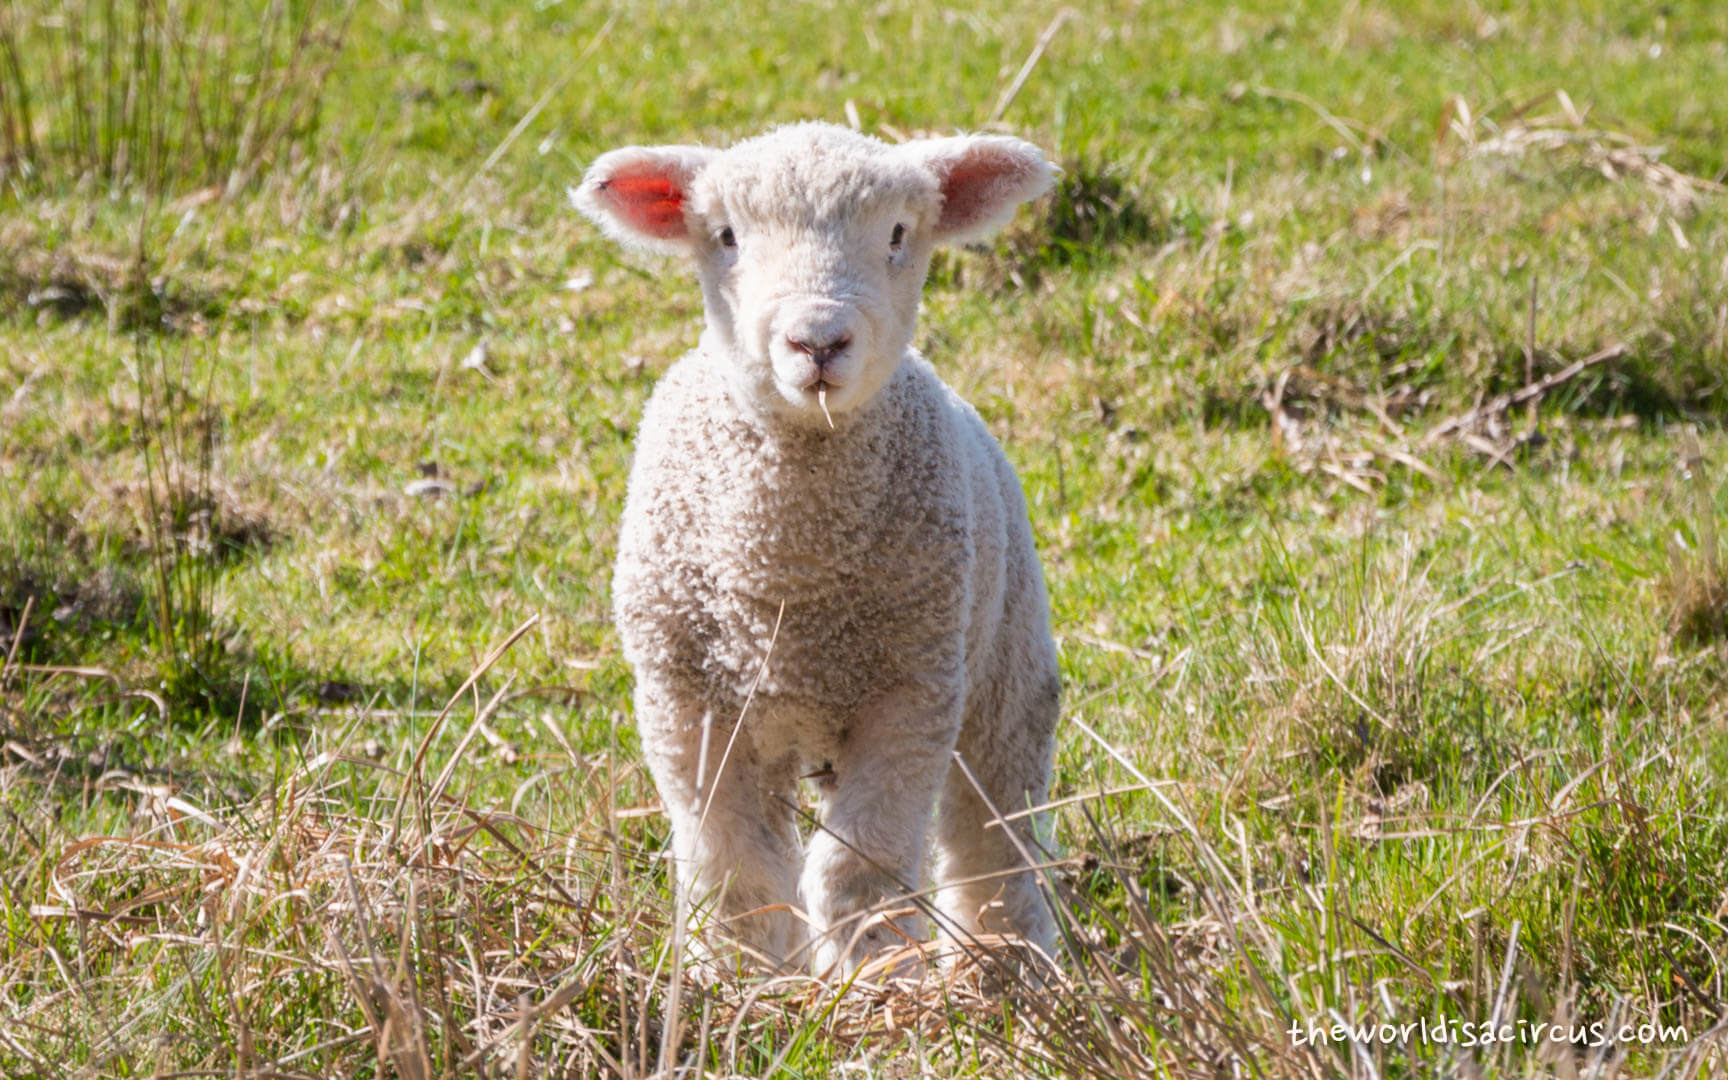 Cute lamb in New Zealand